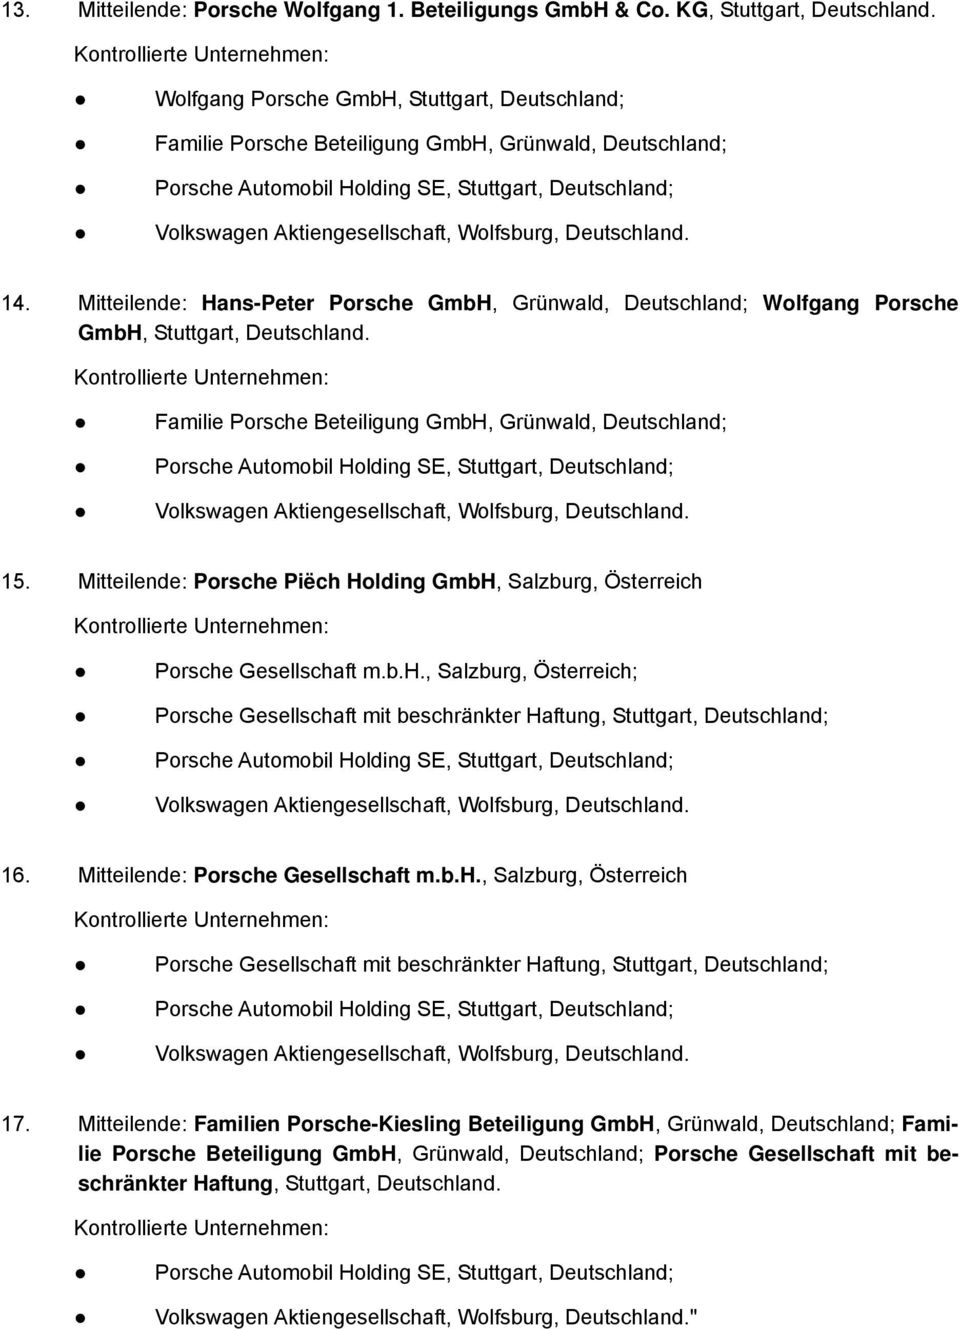 Mitteilende: Porsche Gesellschaft m.b.h., Salzburg, Österreich Porsche Gesellschaft mit beschränkter Haftung, Stuttgart, Deutschland; 17.